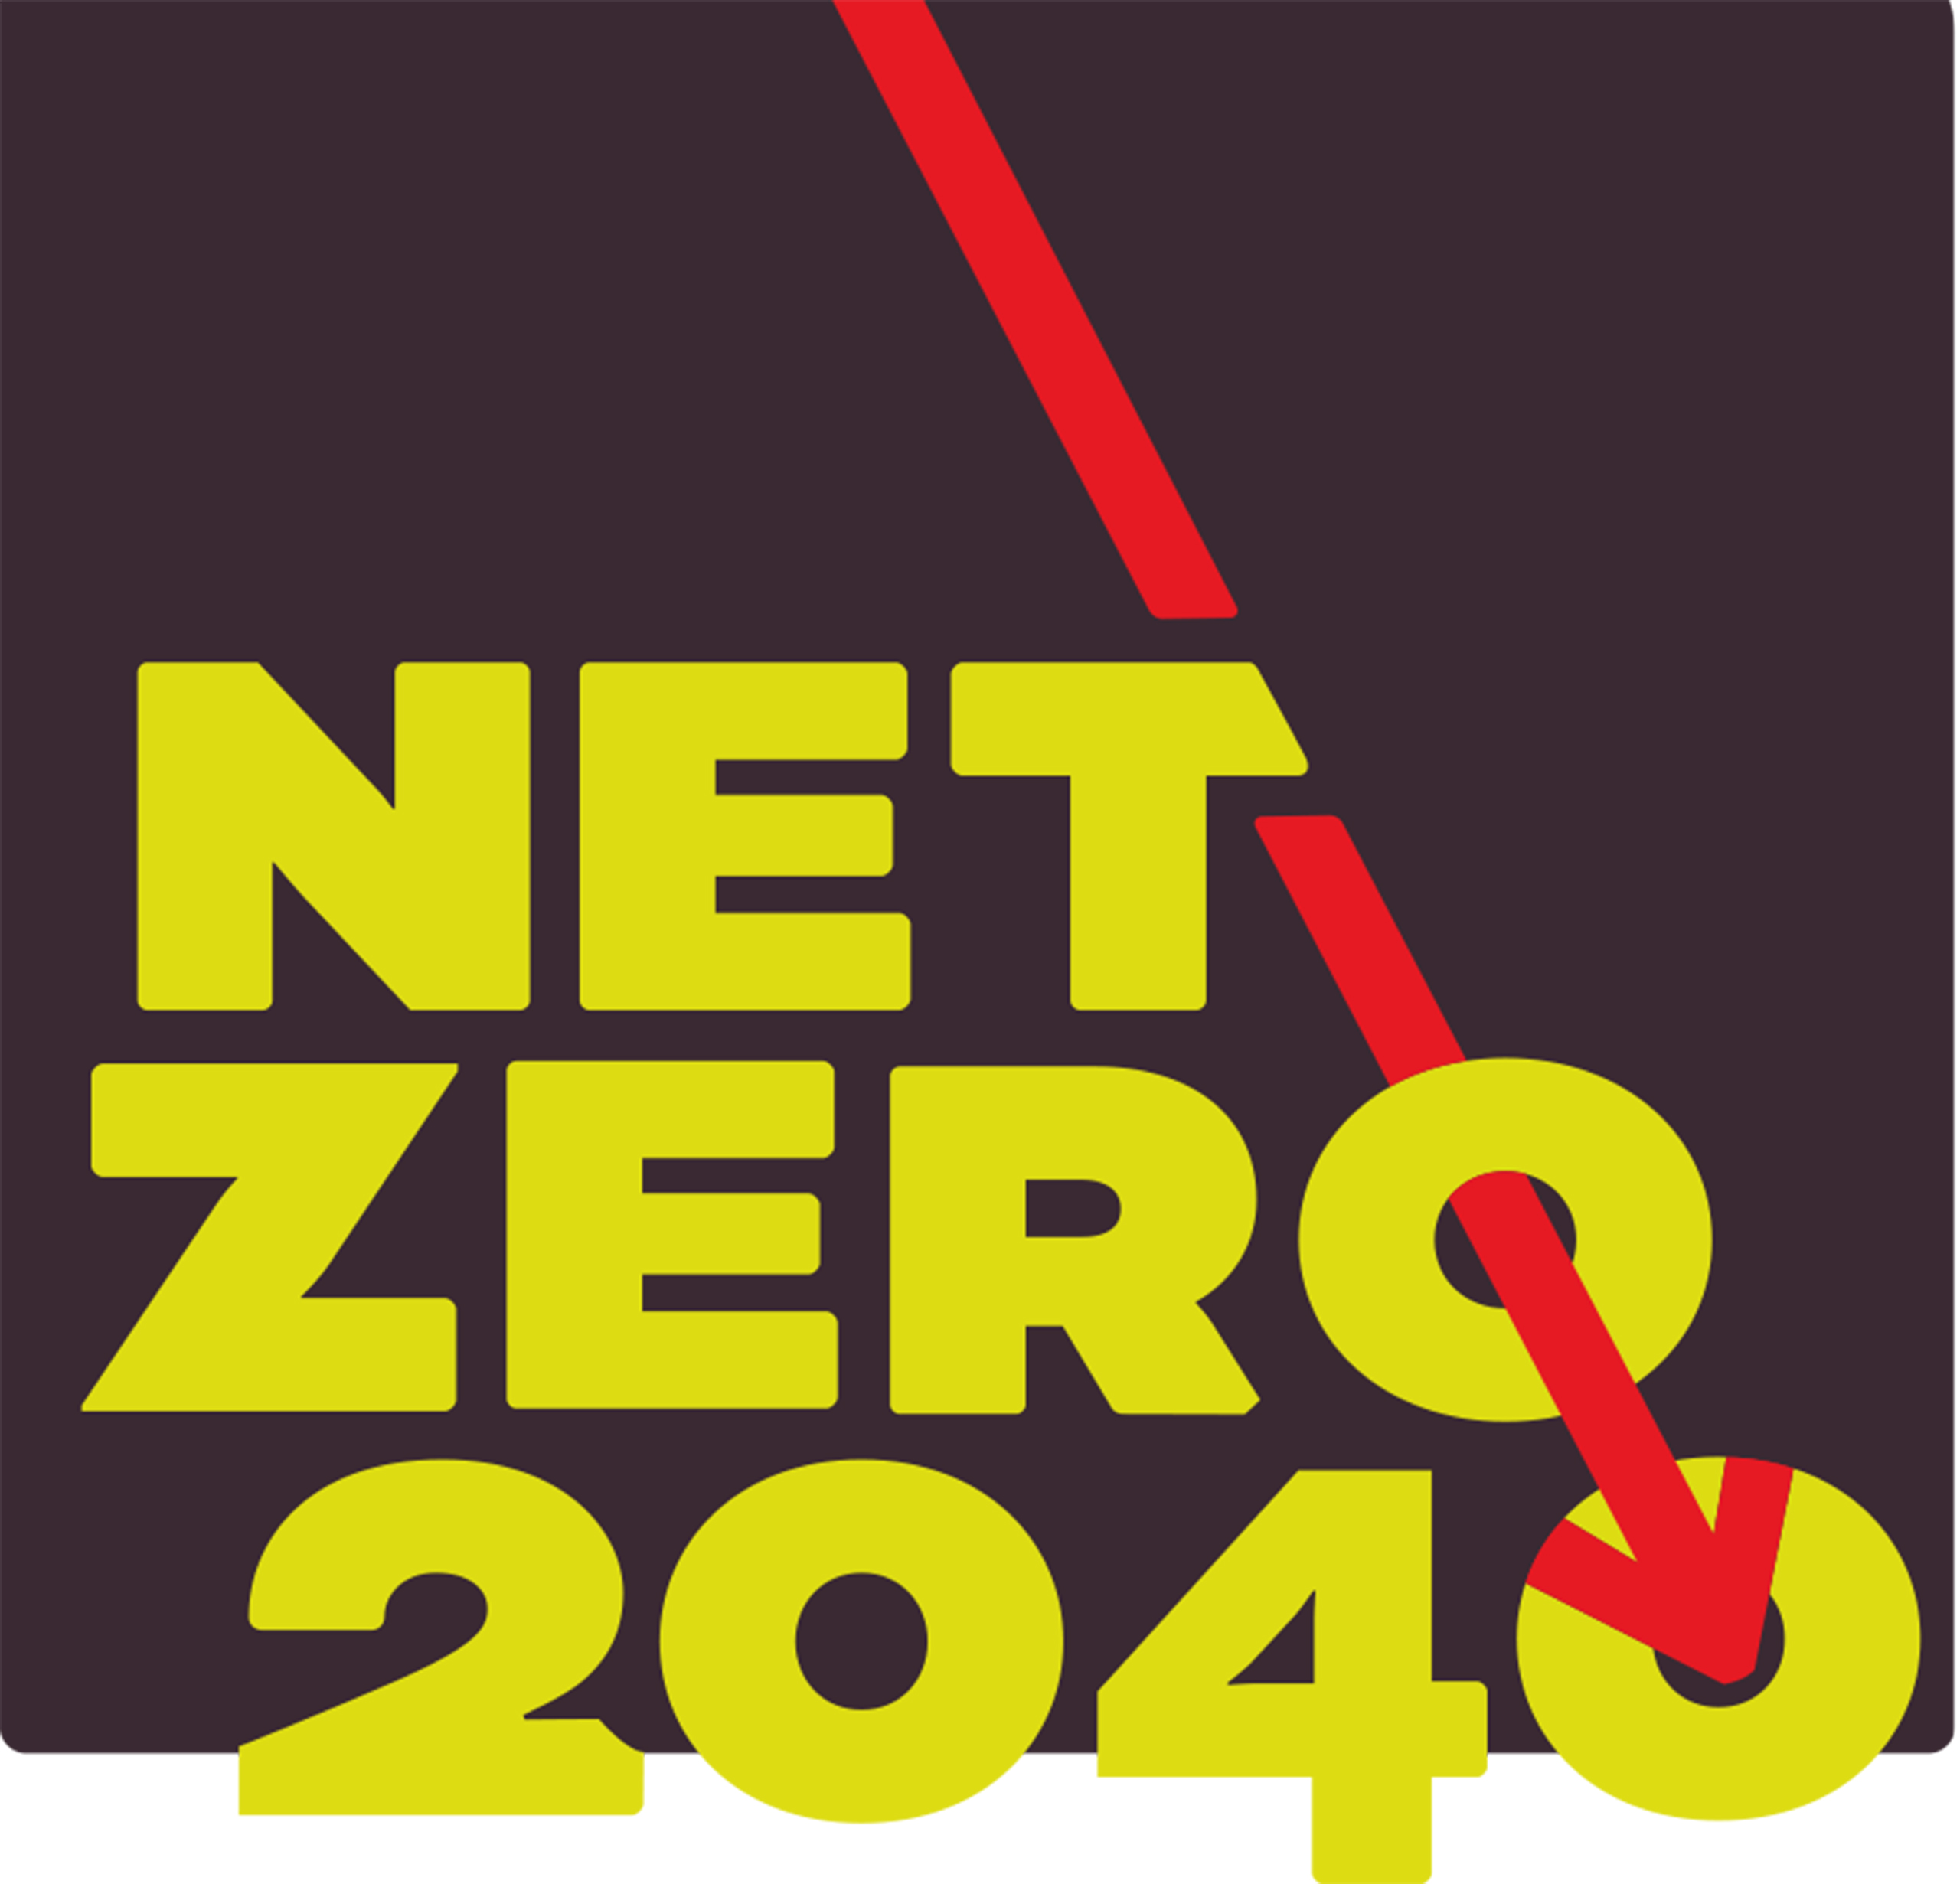 NetZero2040